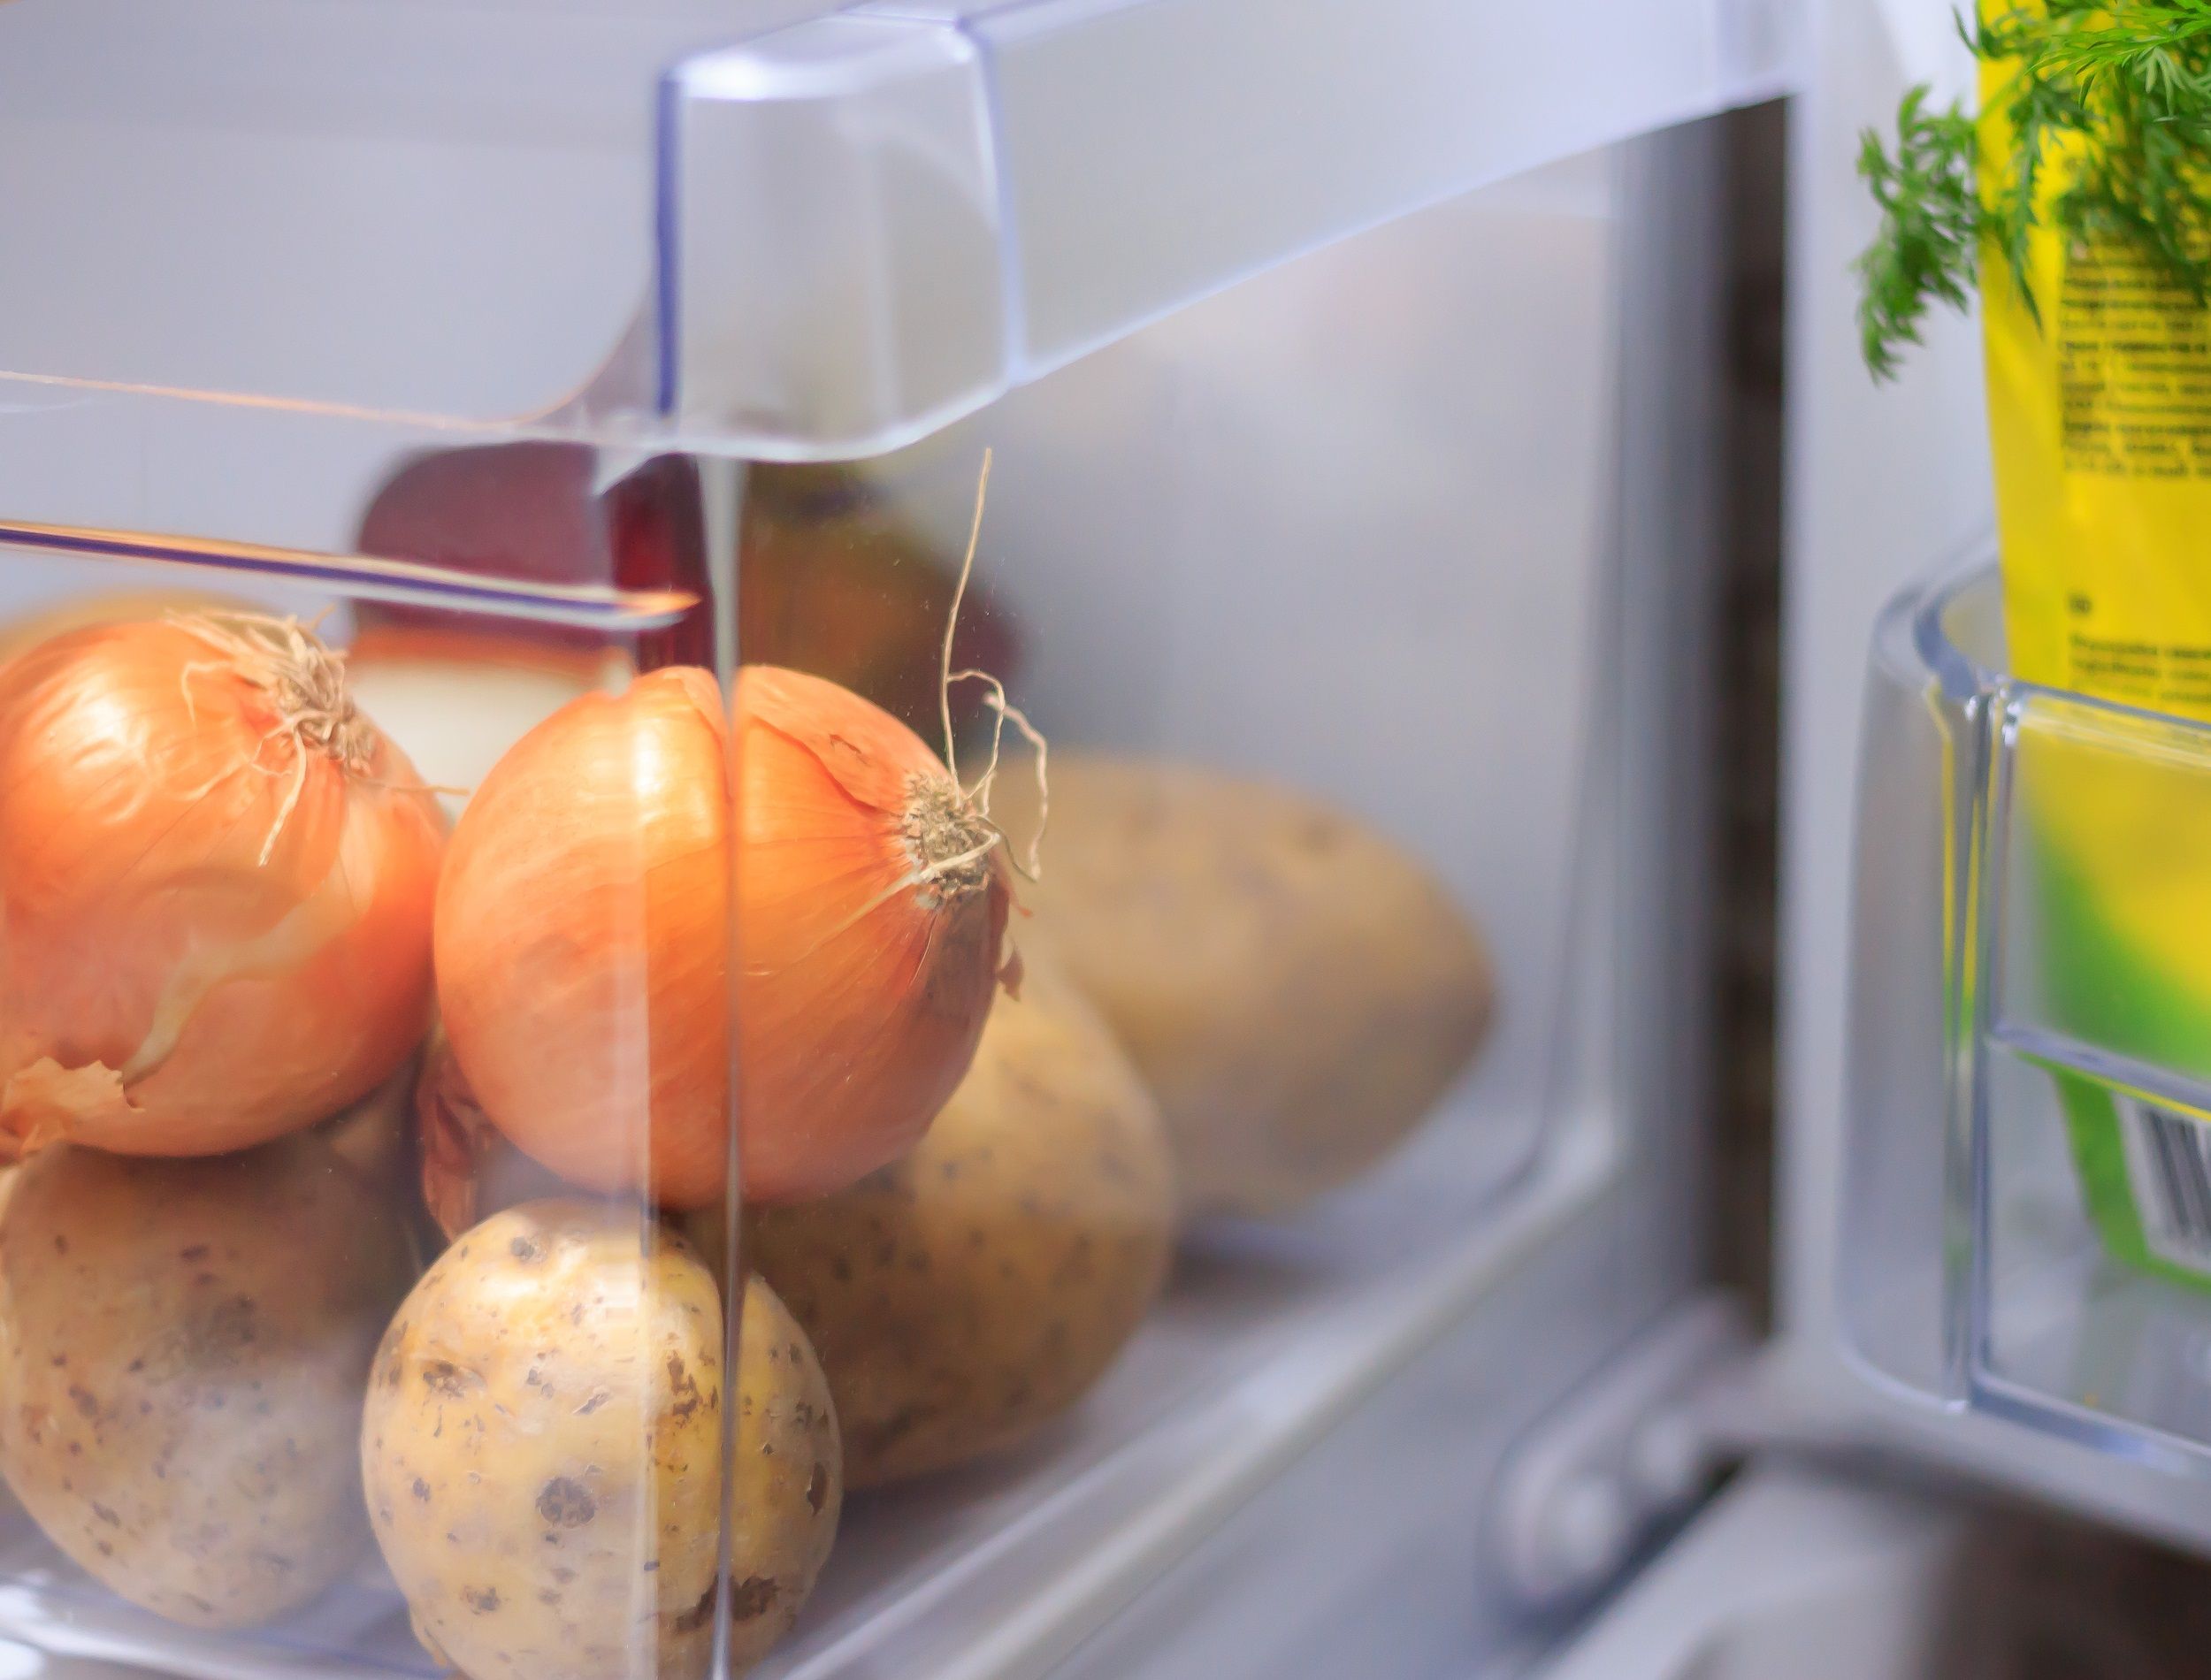 Vegetables in the open fridge drawer